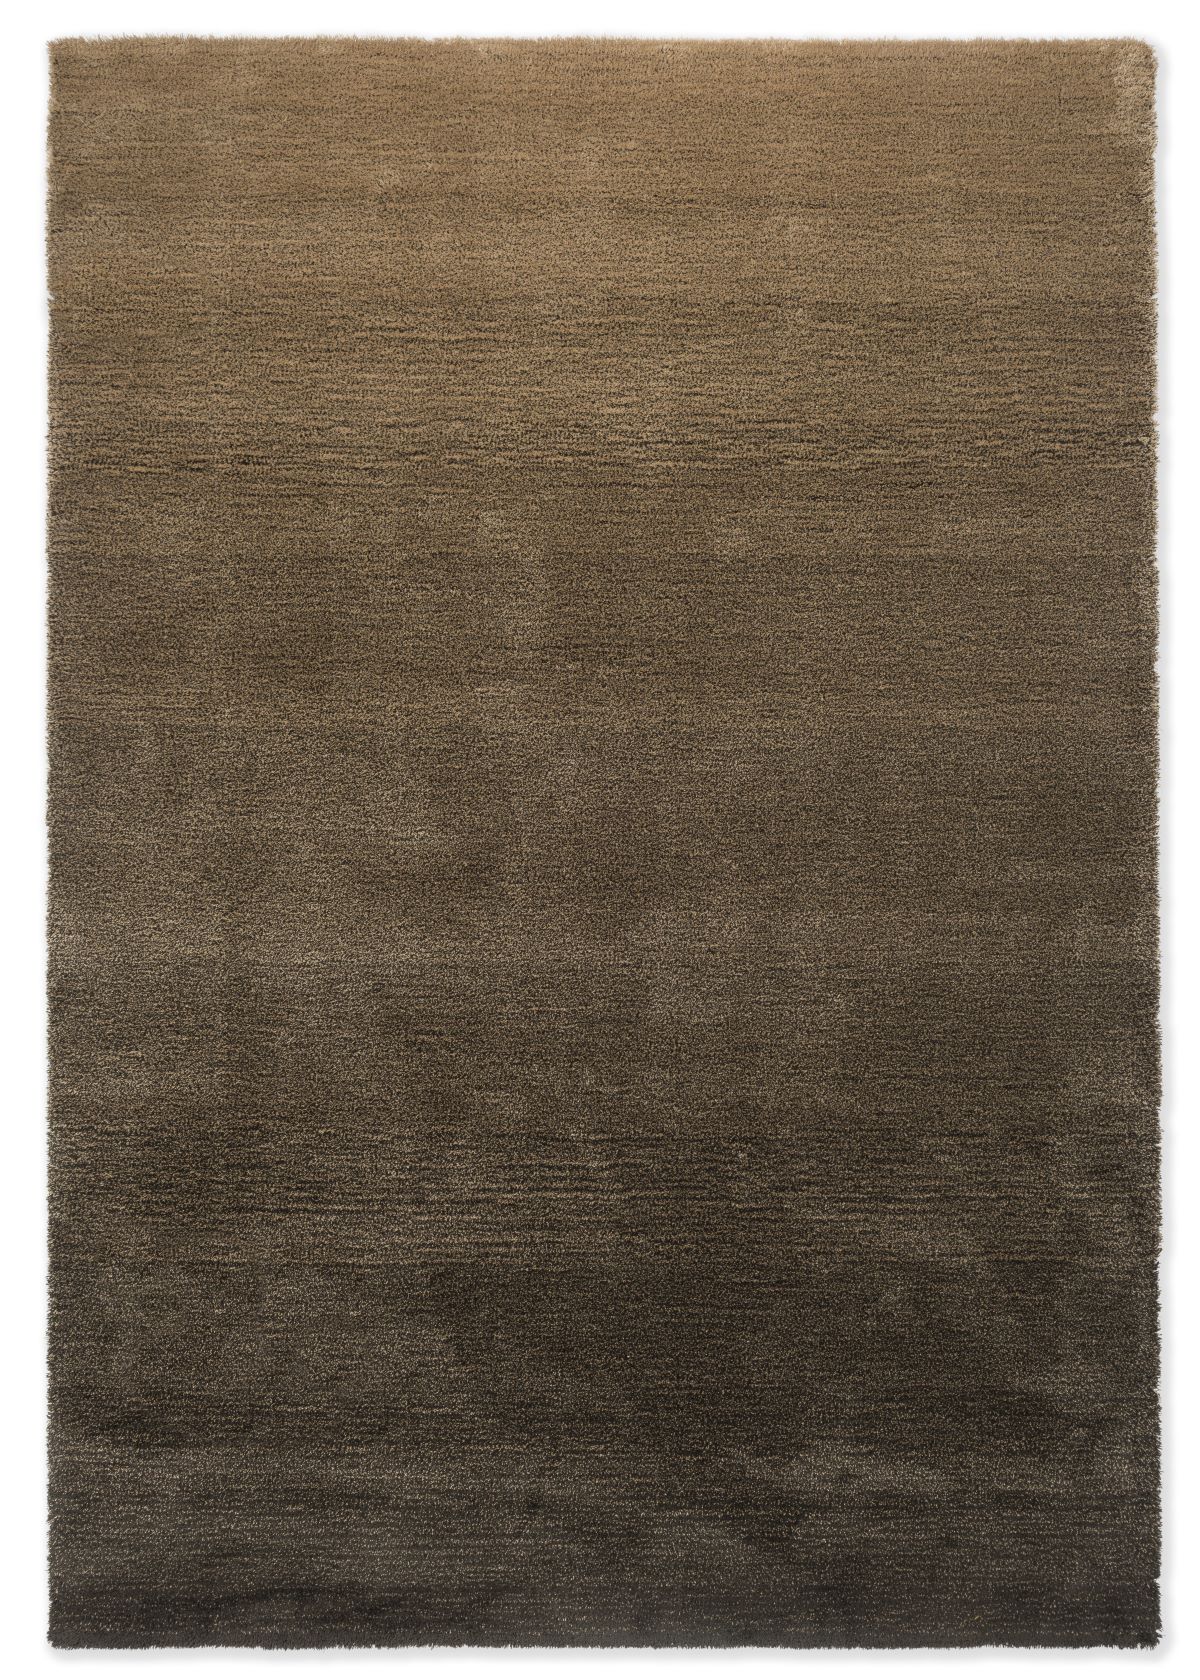 brink-and-campman-rug-shade-low-beige-dark-chocolate-010101